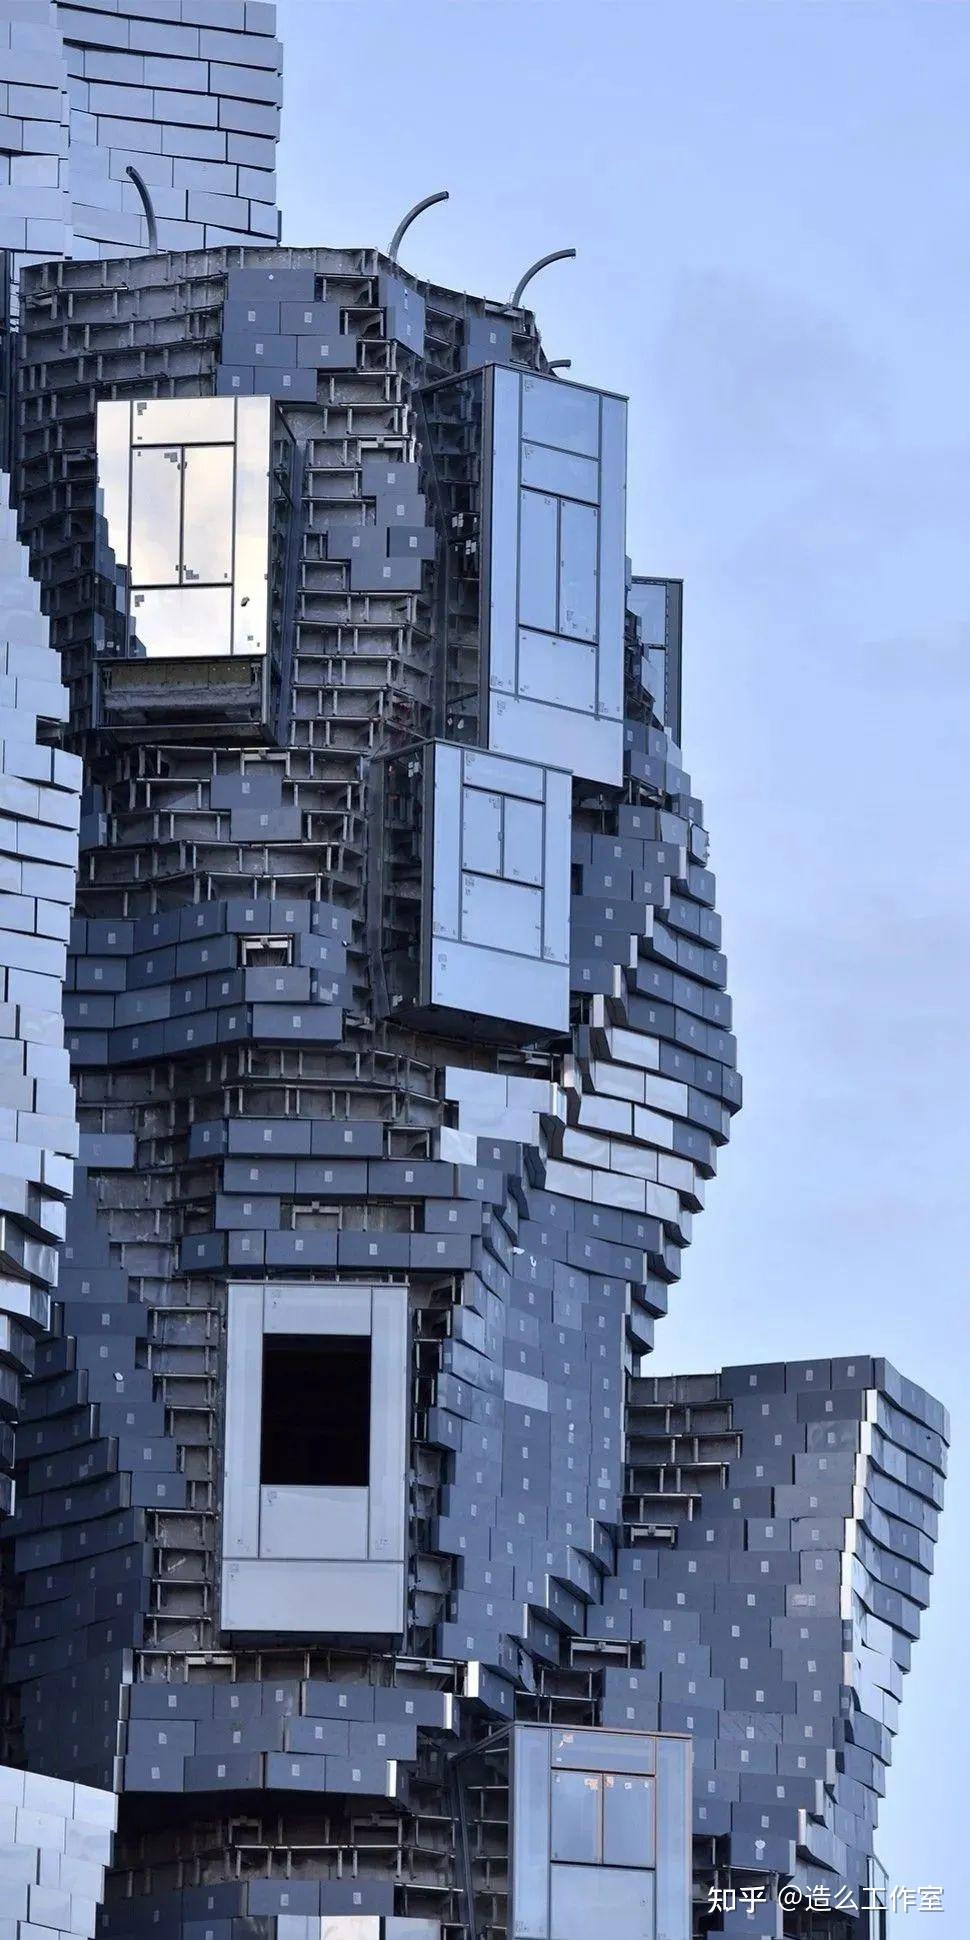 解构主义建筑大师frankgehry新作在梵高之城用11000片不锈钢扭了个